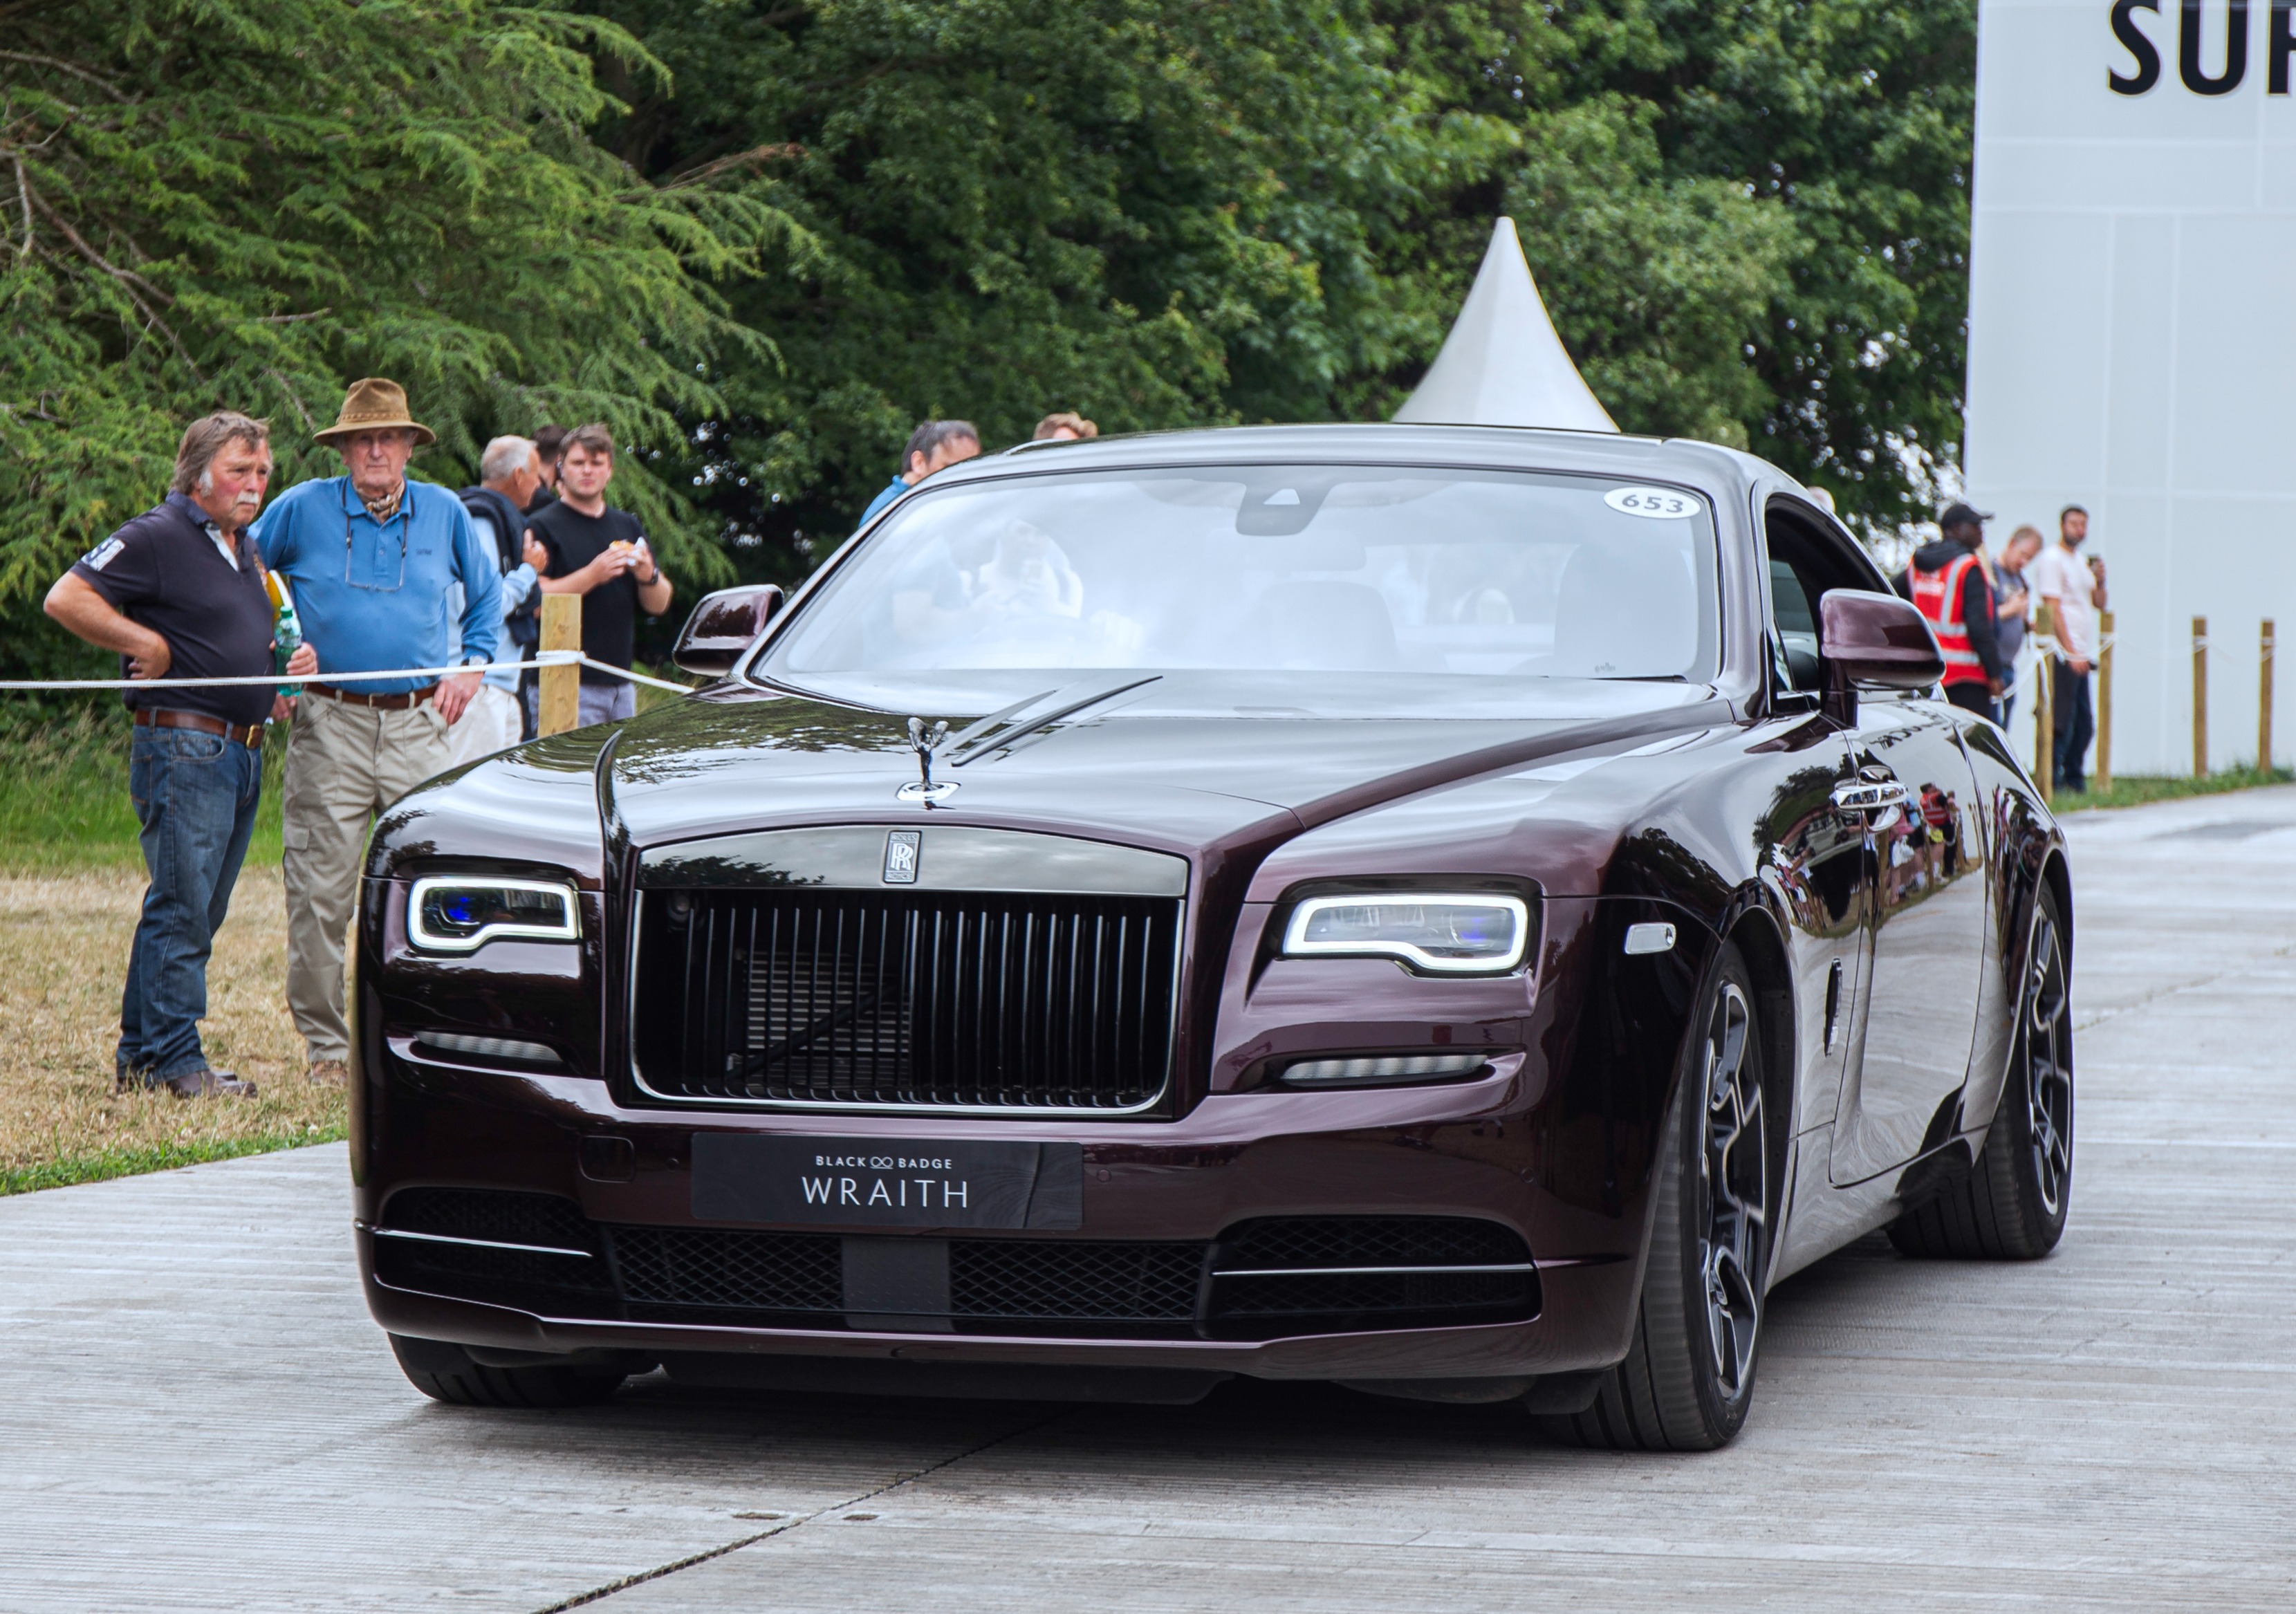 Im Laufe der Jahre soll Hearn einen Rolls-Royce Wraith im Wert von 320.000 Pfund besessen haben